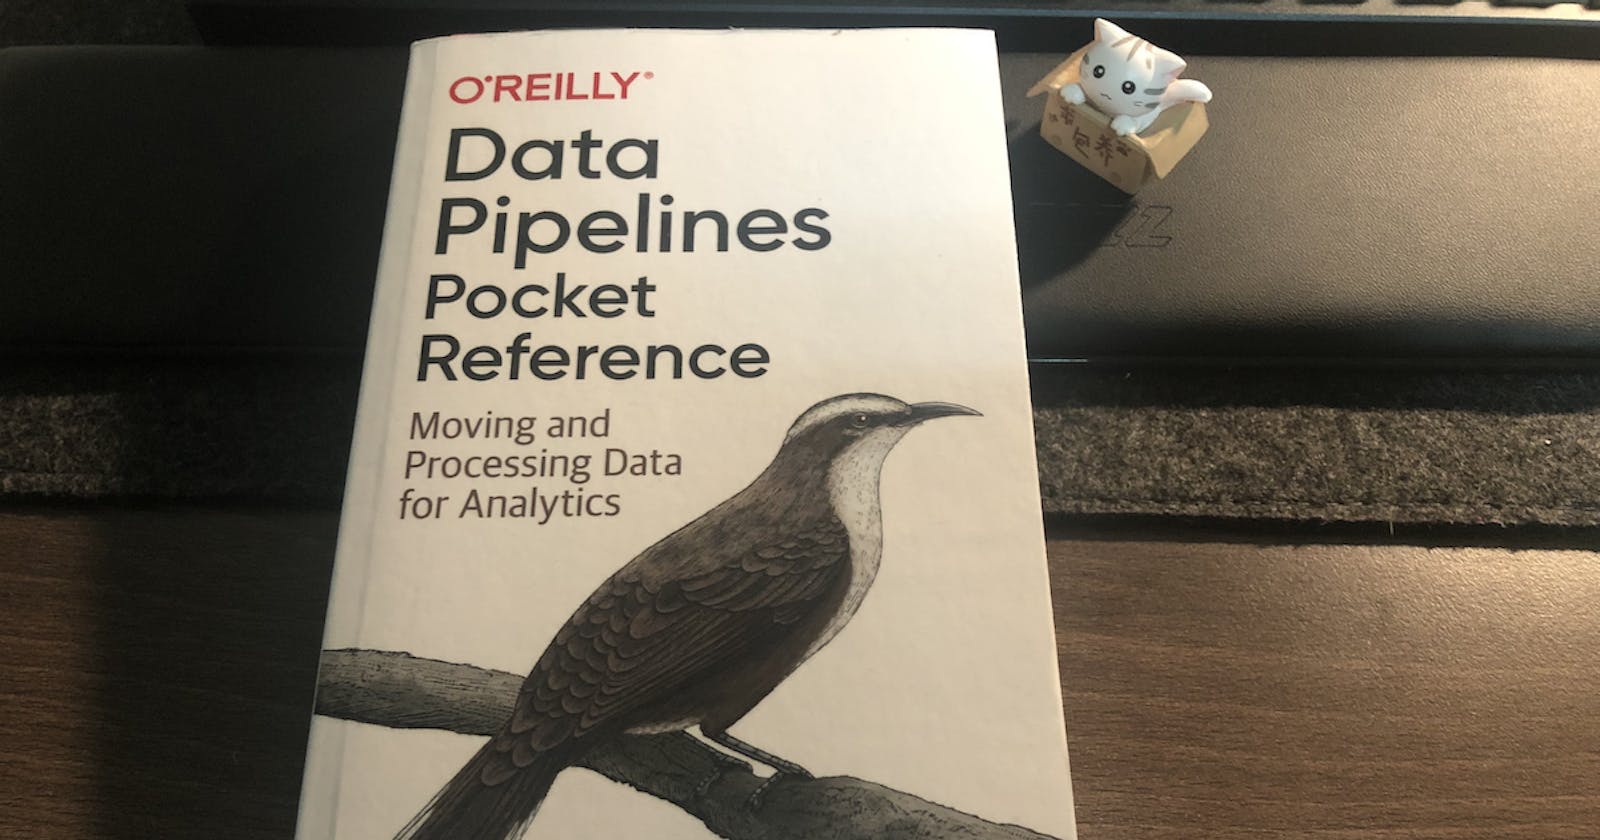 รีวิวหนังสือ "Data Pipelines Pocket Reference: Moving and Processing Data for Analytics"